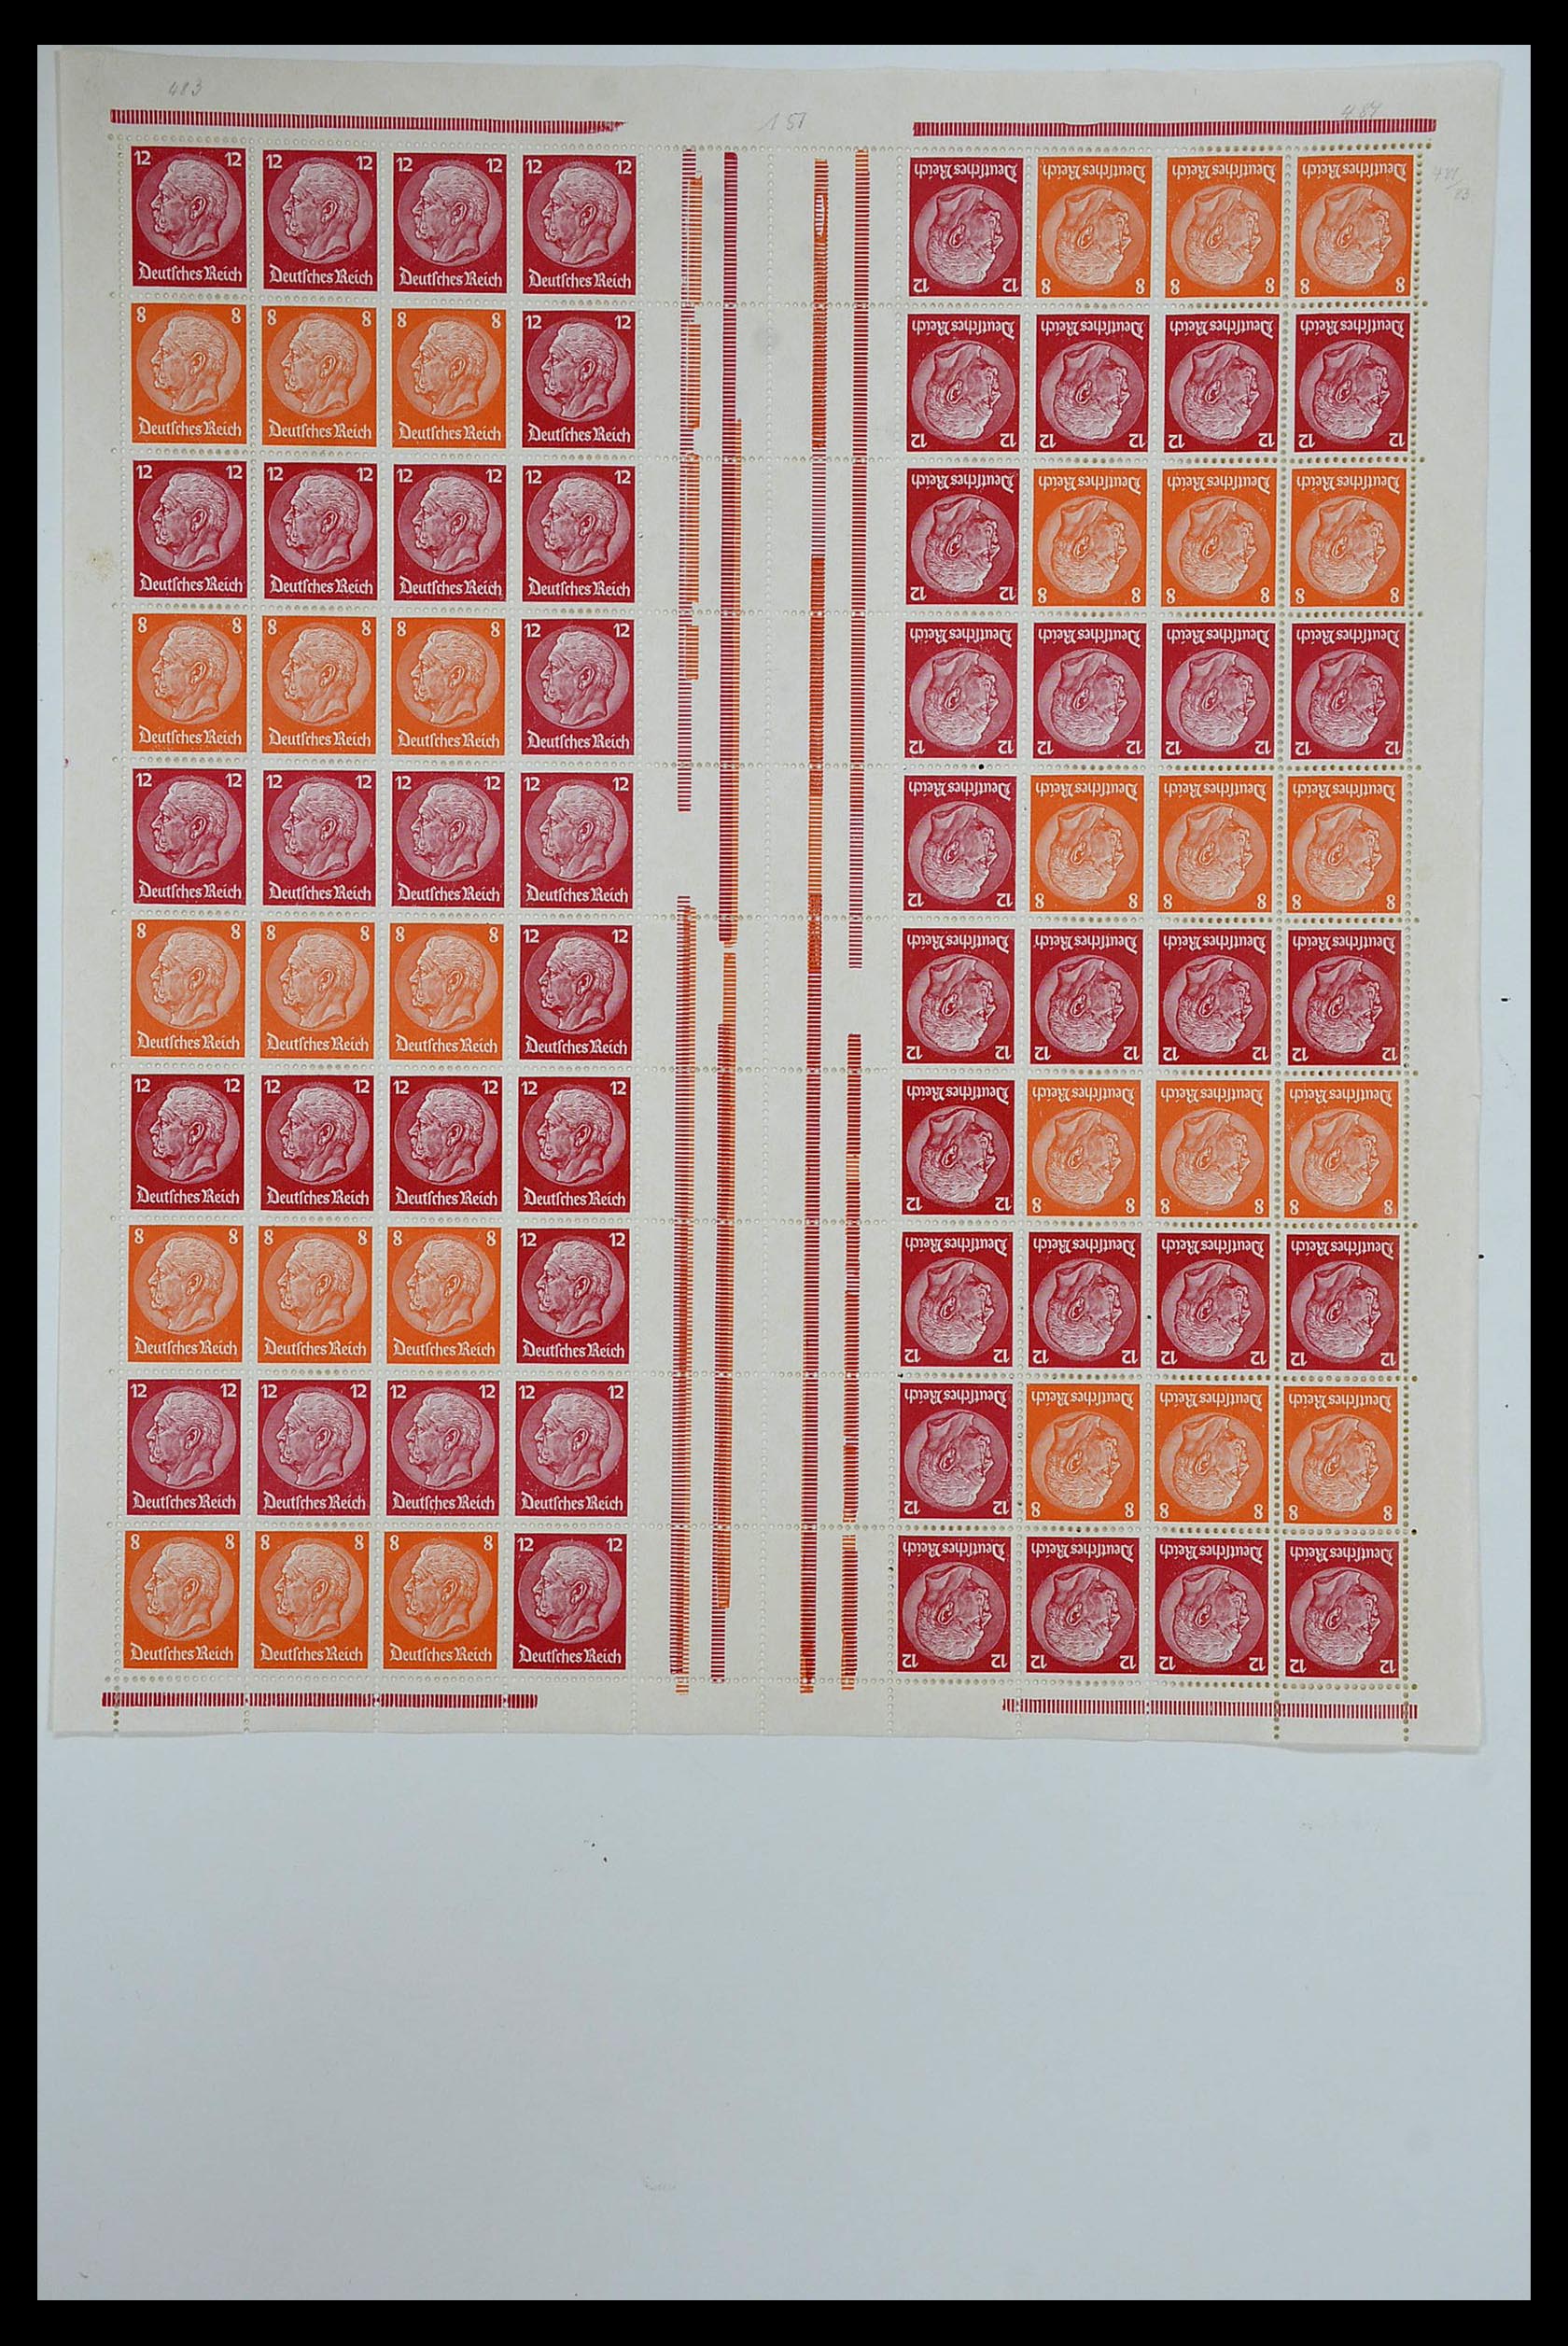 35075 003 - Stamp Collection 35075 German Reich Markenheftchenbogen 1933-1941.